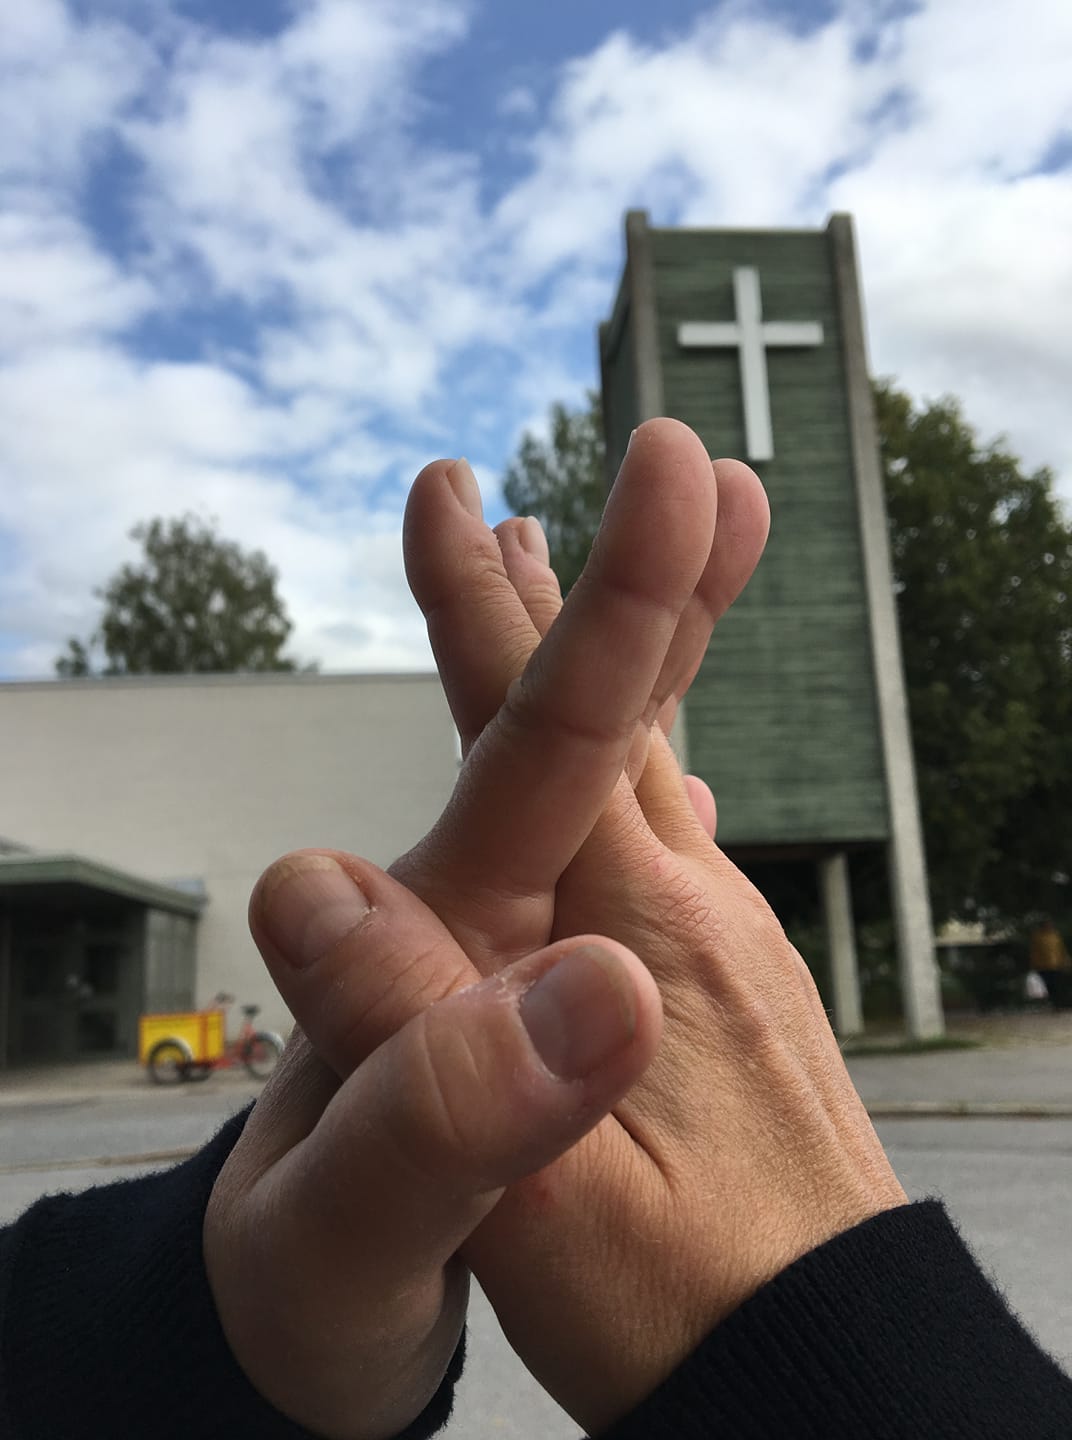 Tecknet för kyrka på teckenspråk